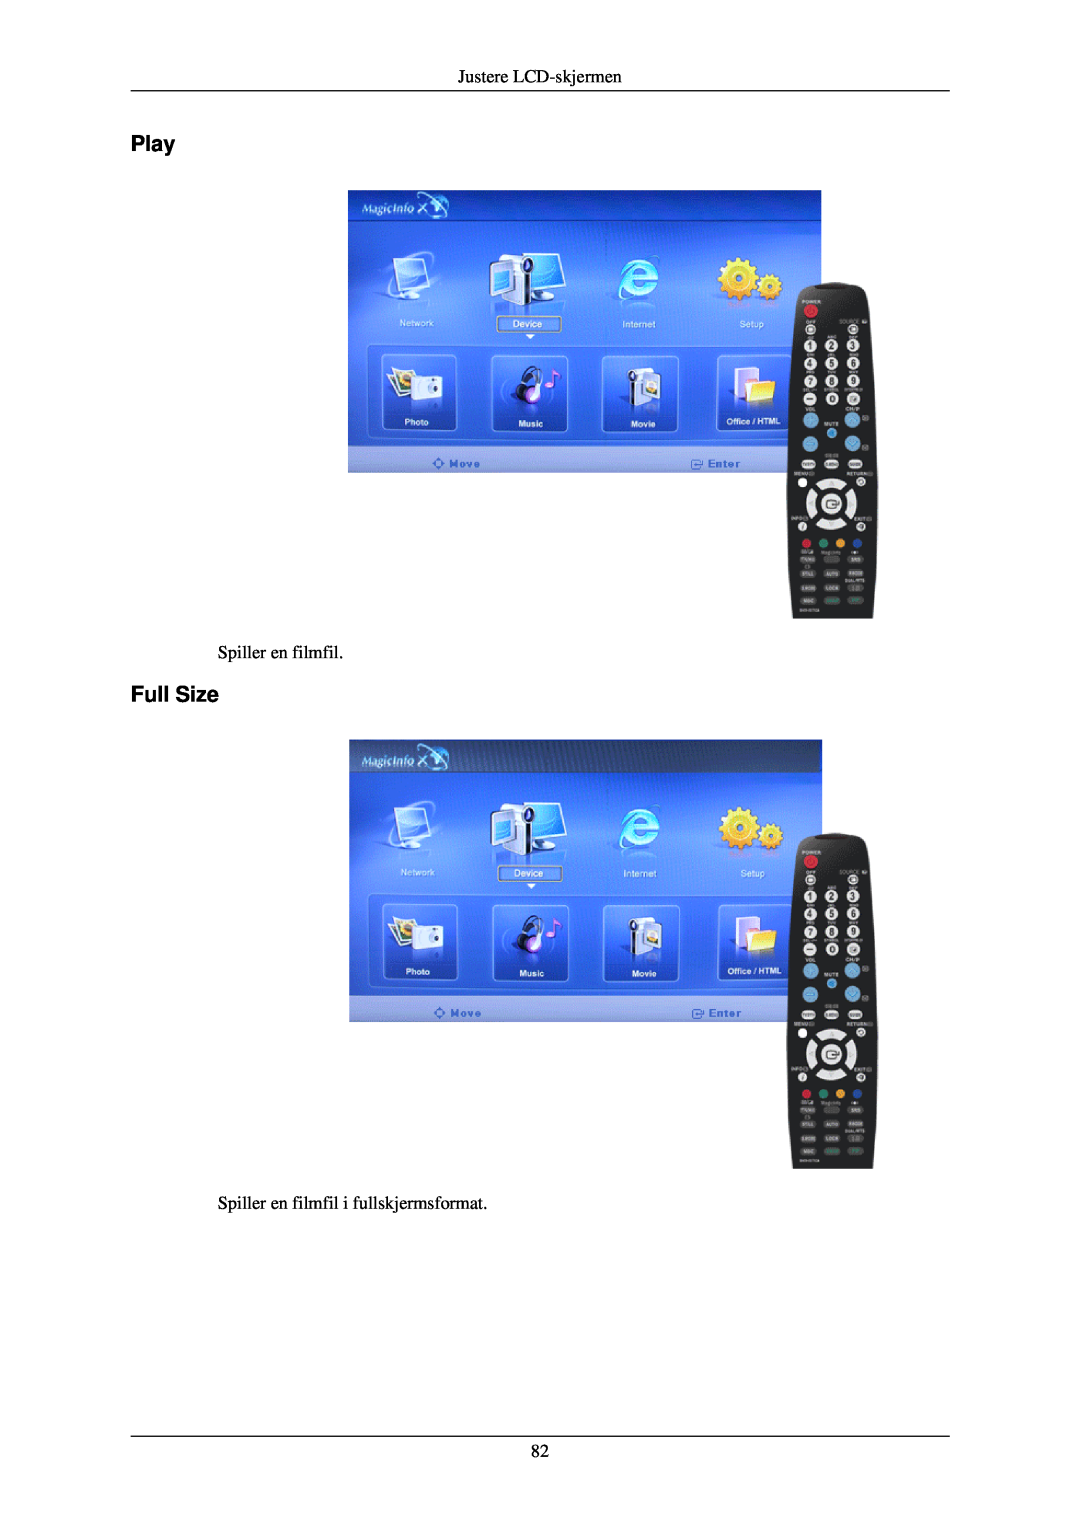 Samsung LH40TCQMBG/EN, LH40TCUMBG/EN Play, Full Size, Justere LCD-skjermen, Spiller en filmfil i fullskjermsformat 